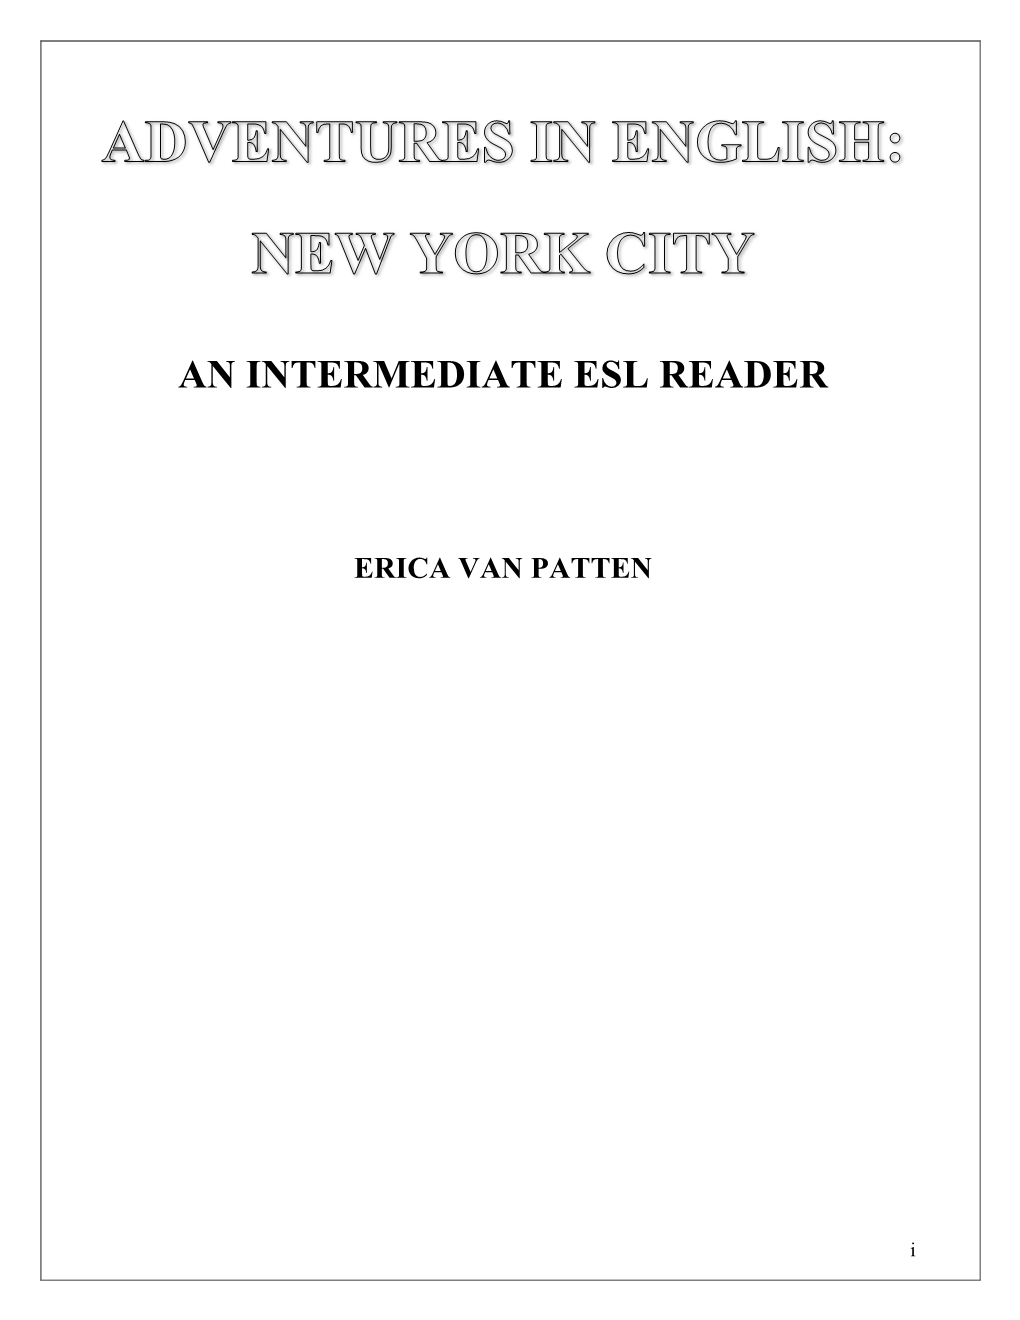 An Intermediate Esl Reader